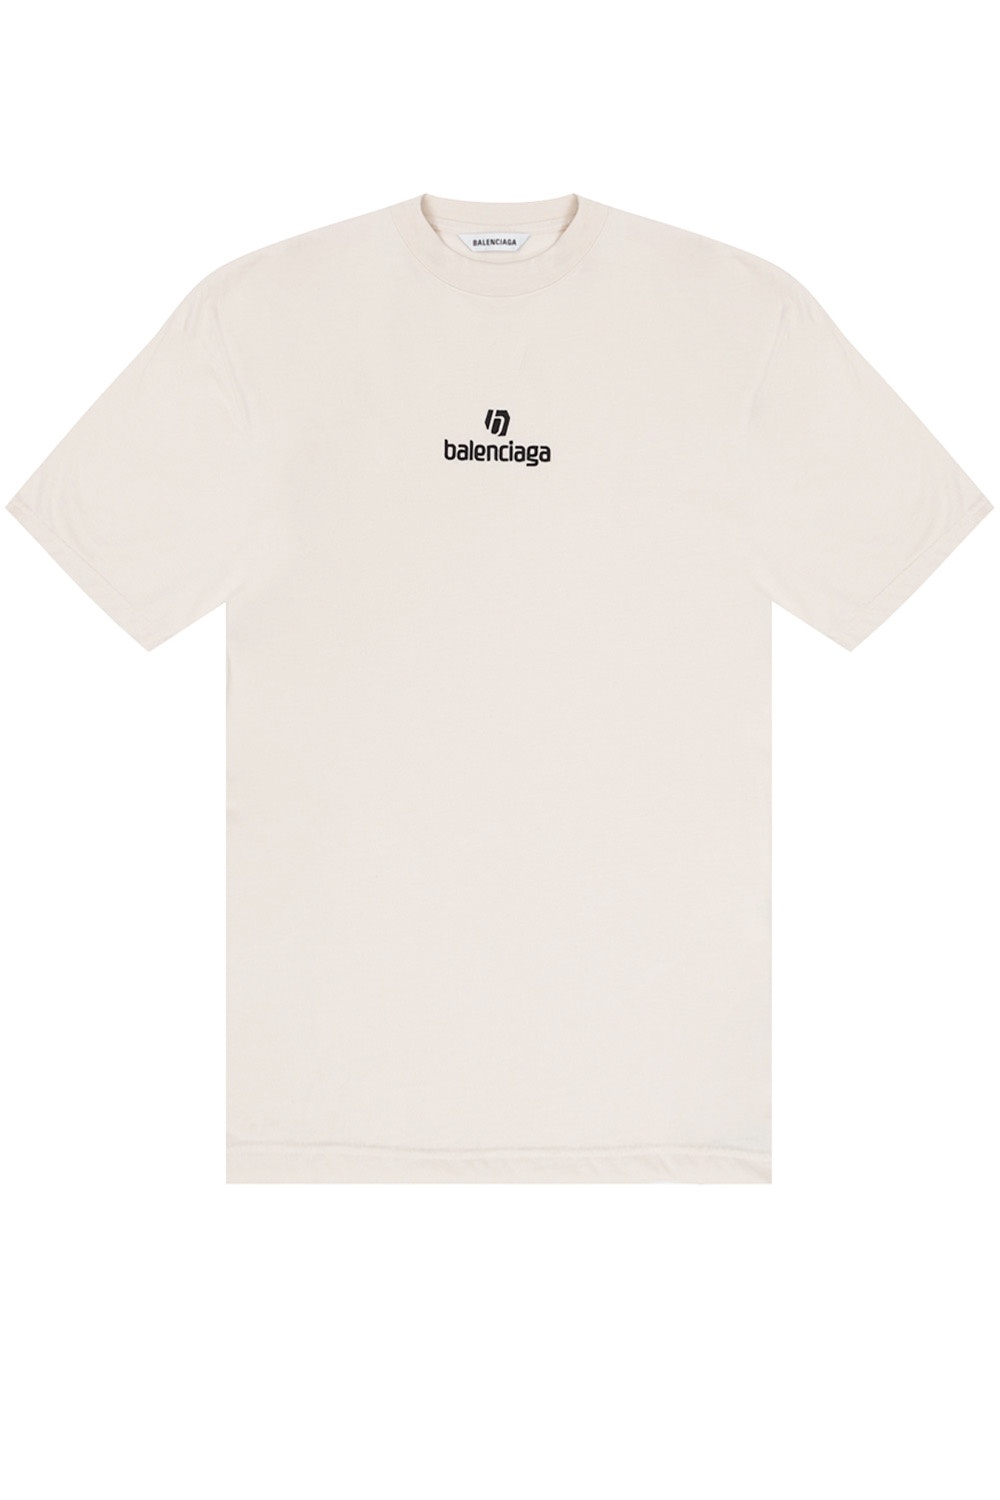 Balenciaga Oversize T-shirt | Women's Clothing | Vitkac